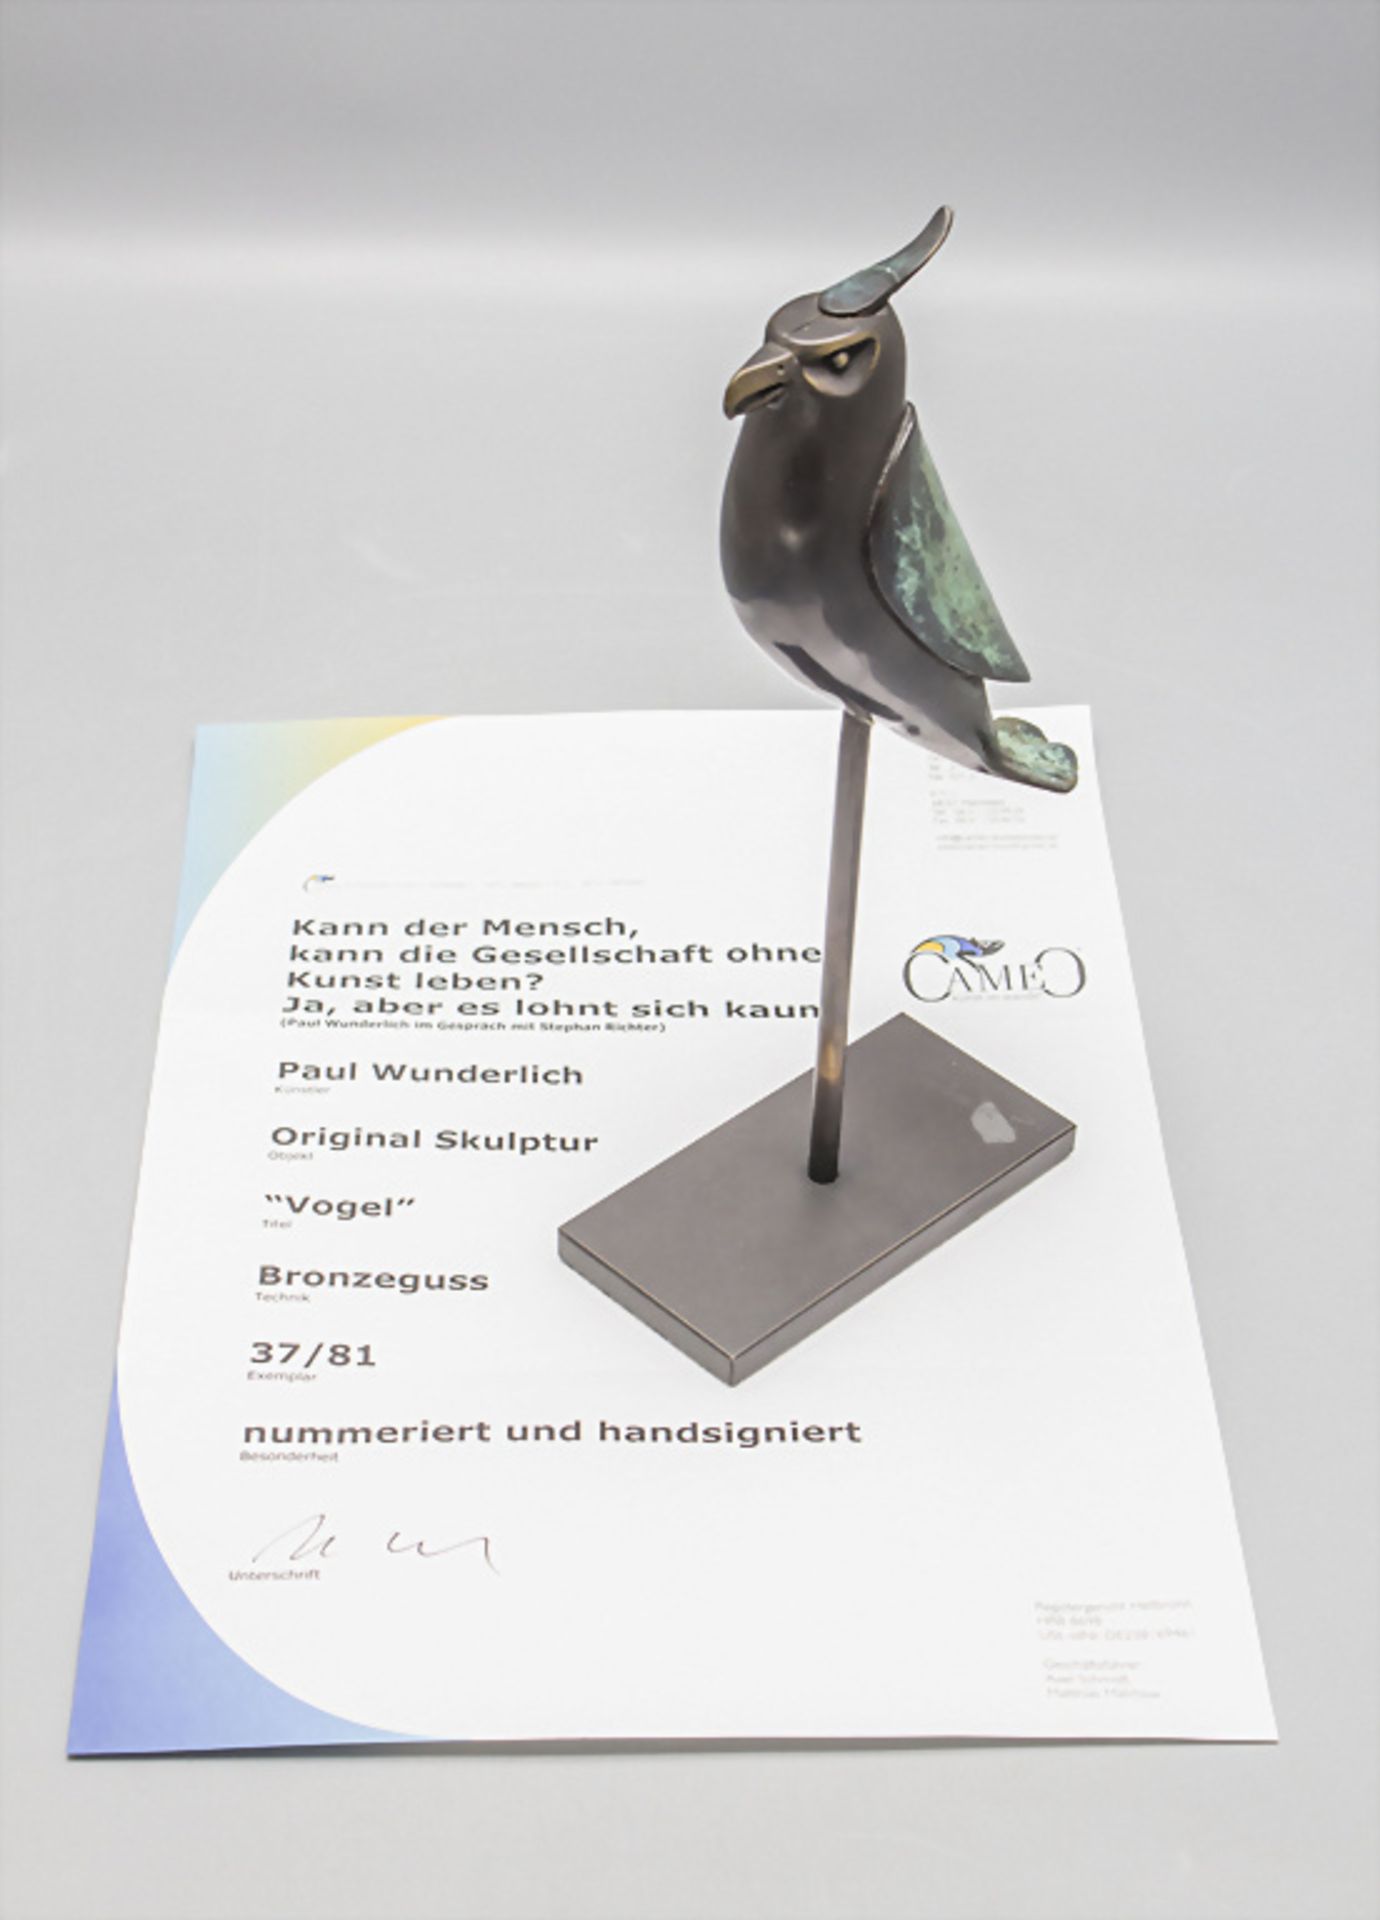 Paul WUNDERLICH (1927-2010), 'Kleiner Raubvogel' / Bronze scuplture 'Small bird of prey'